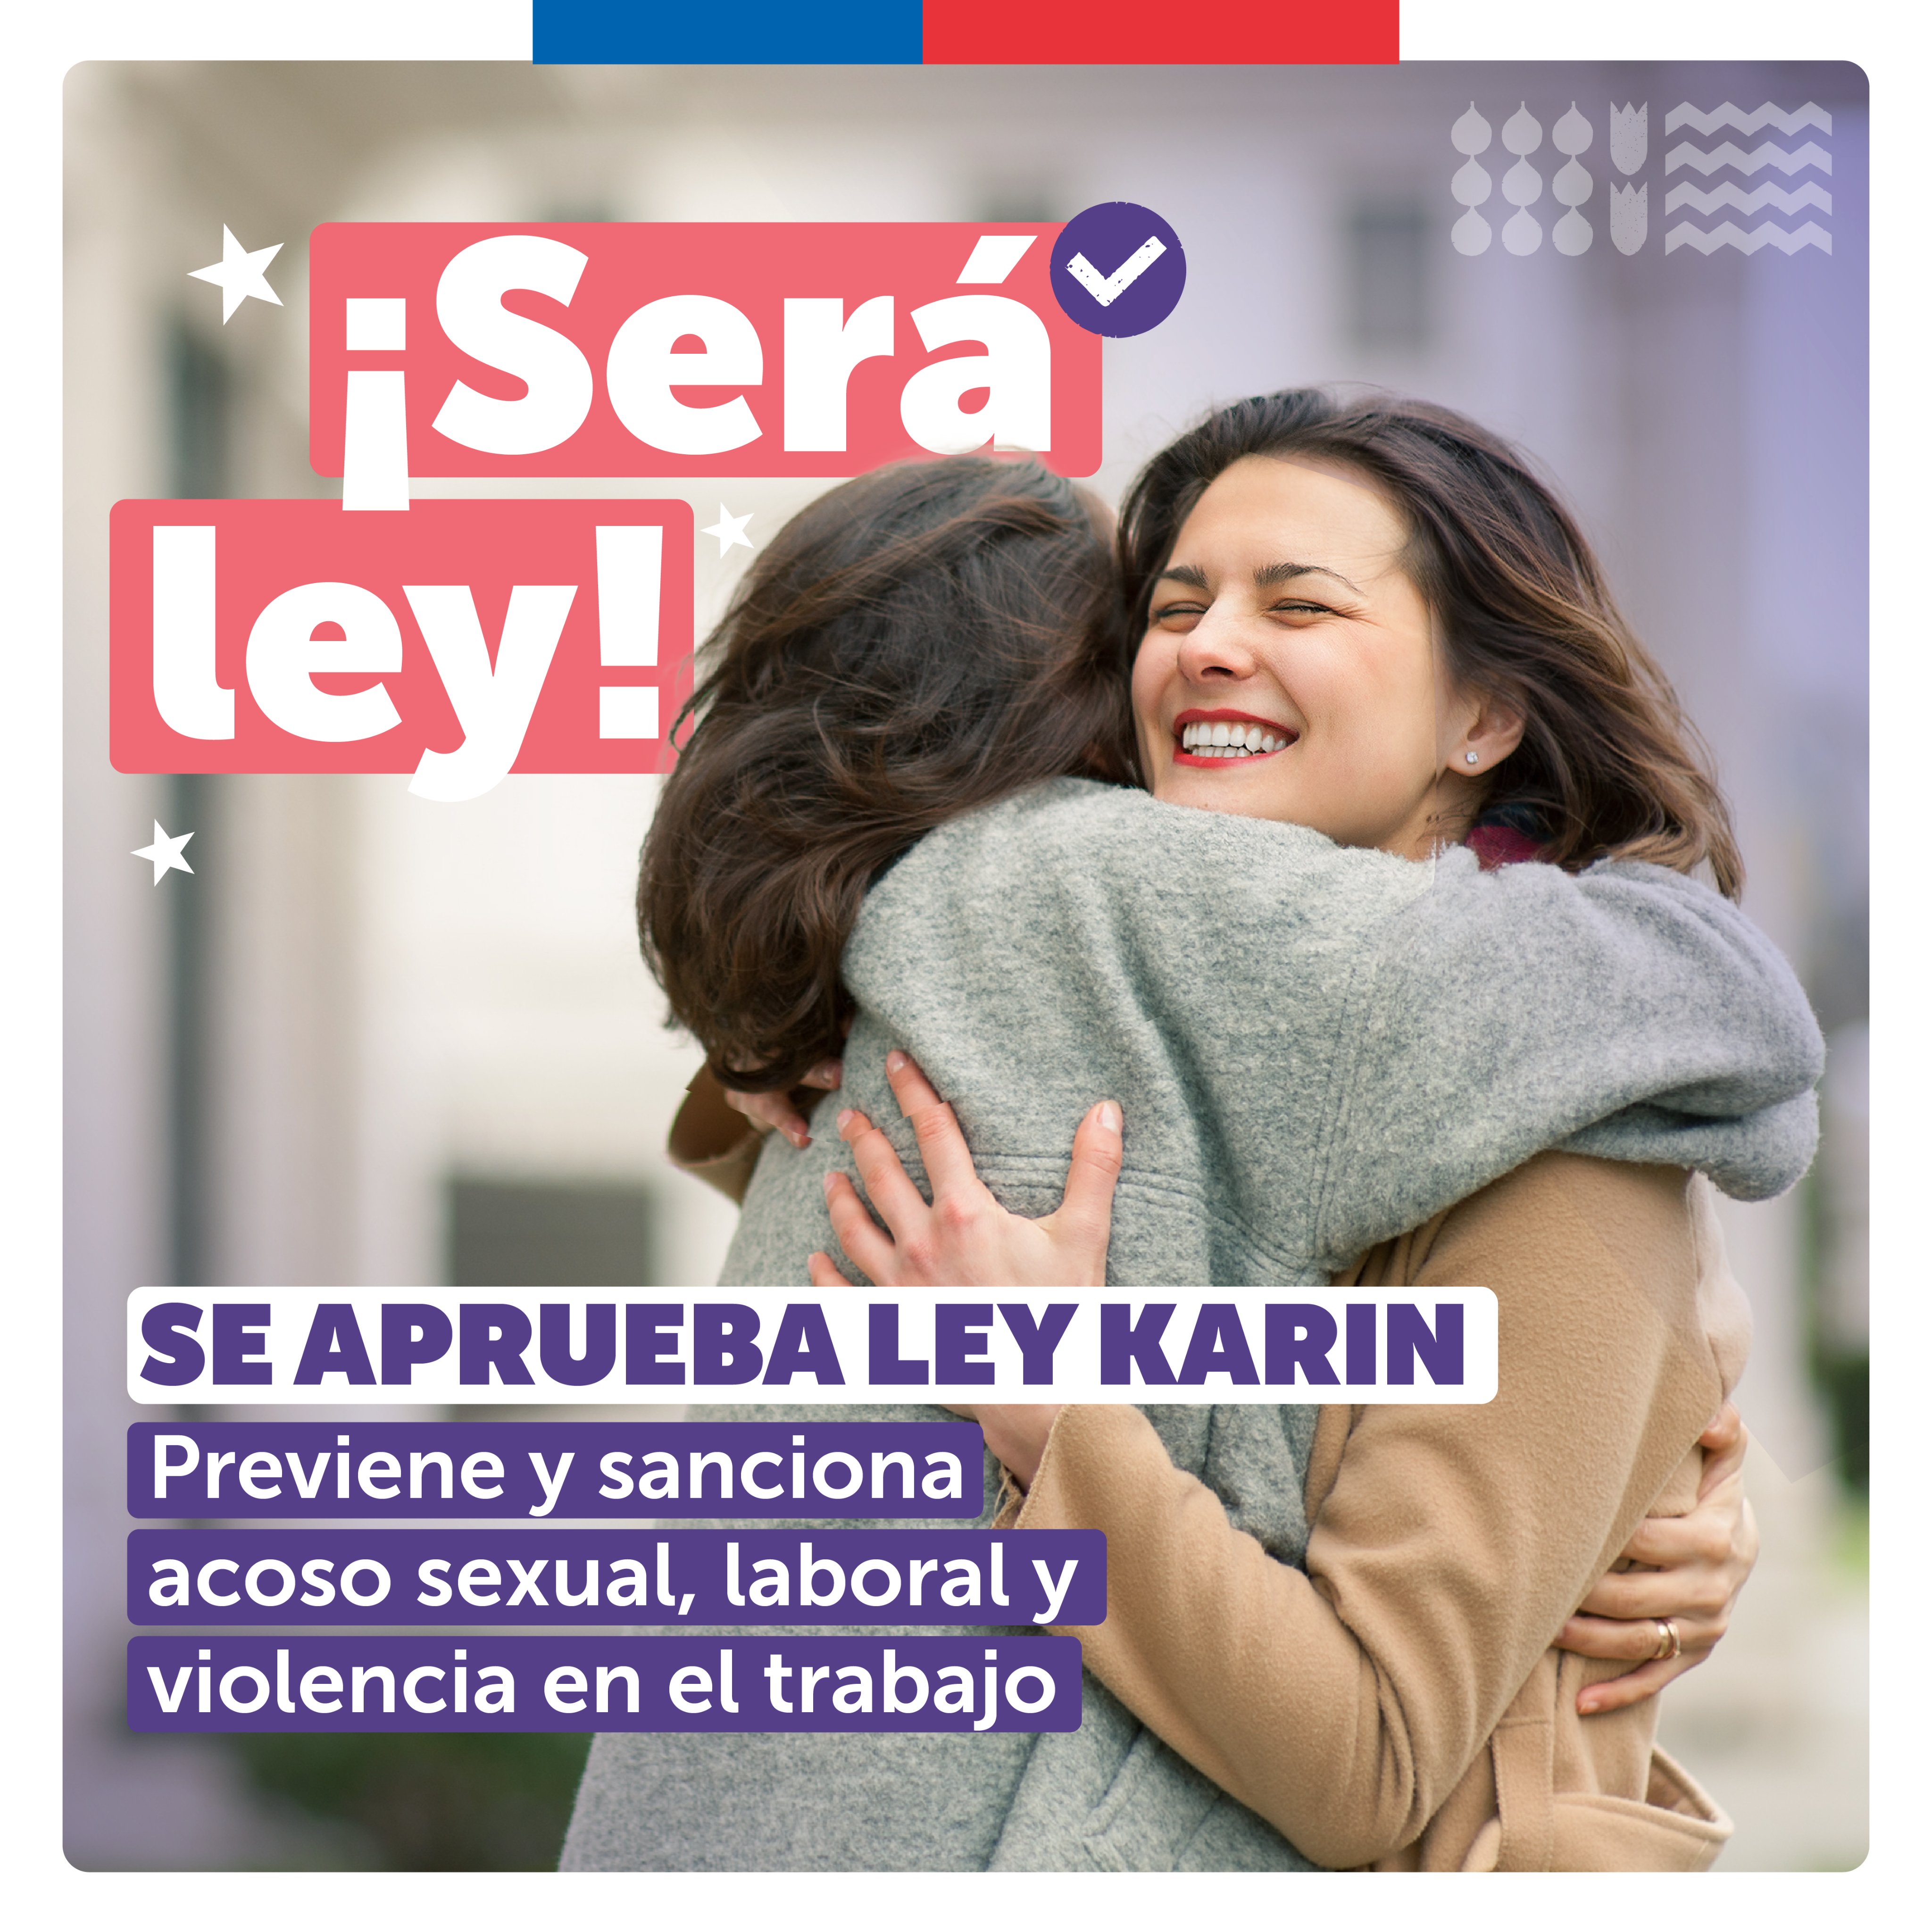 Ley Karin: Promulgan Ley de protección sobre el acoso laboral, sexual y violencia en el trabajo